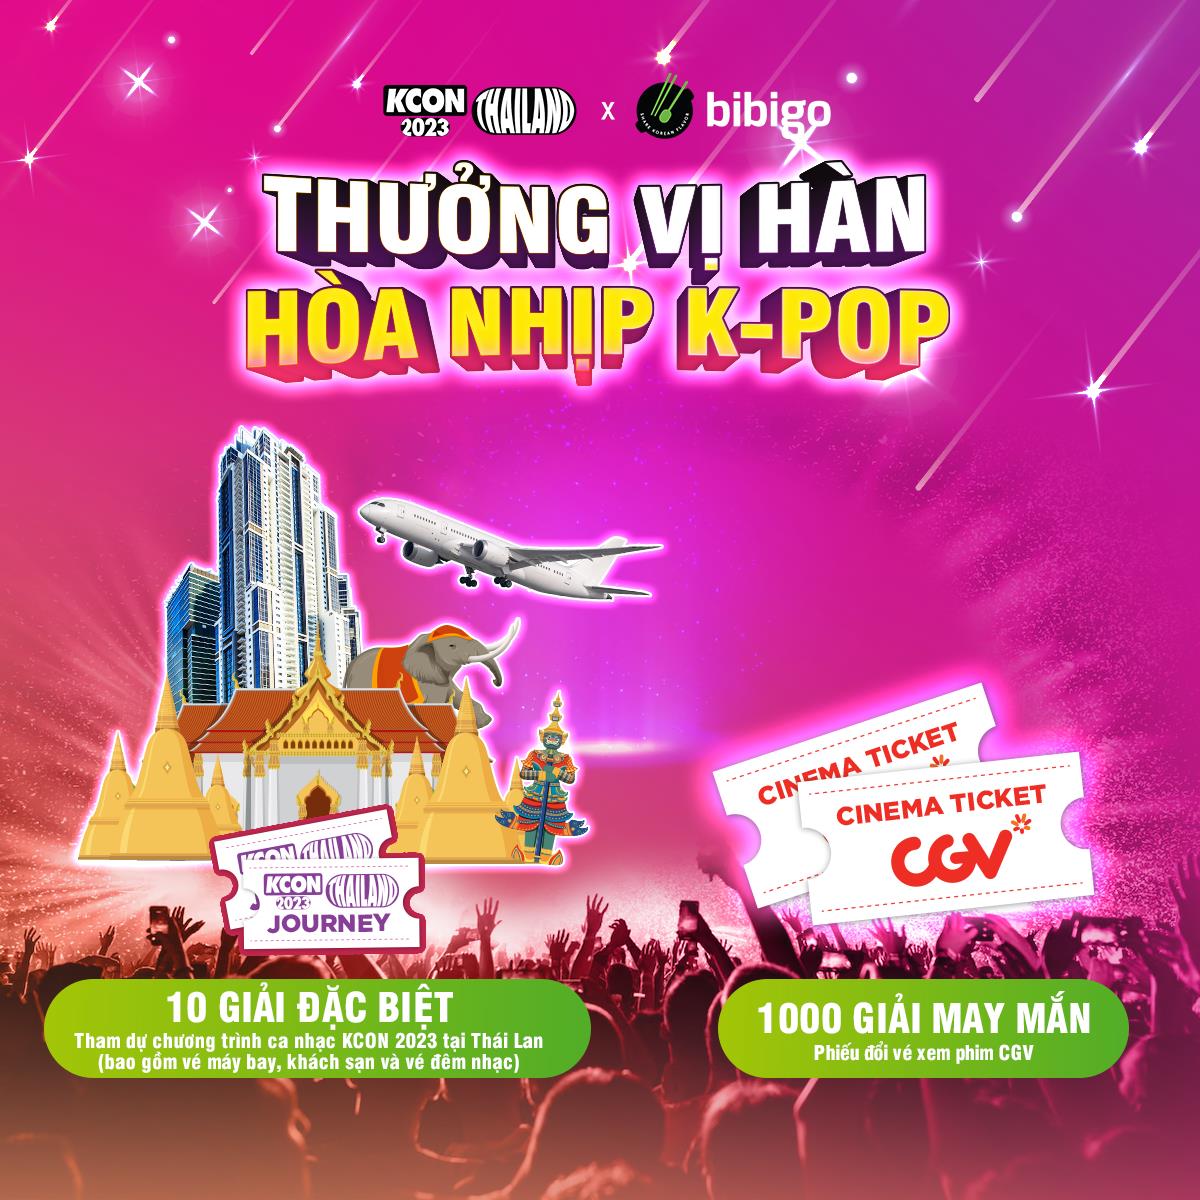 Fan K-pop &quot;đổ bộ&quot; đi săn vé KCON 2023 THAILAND chỉ với 50k! - Ảnh 3.